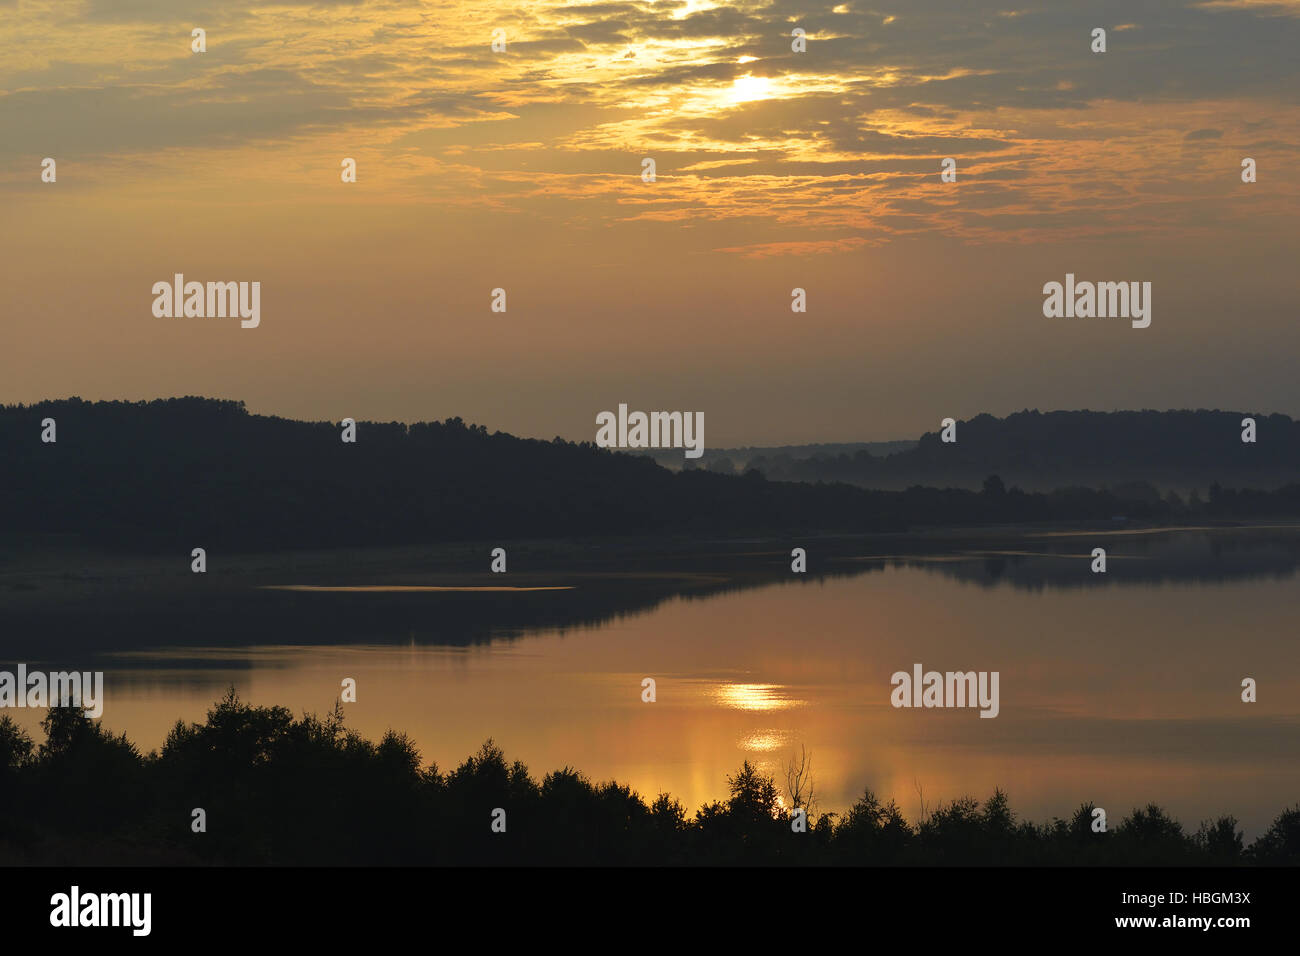 Morning on Lake Berzdorf Stock Photo